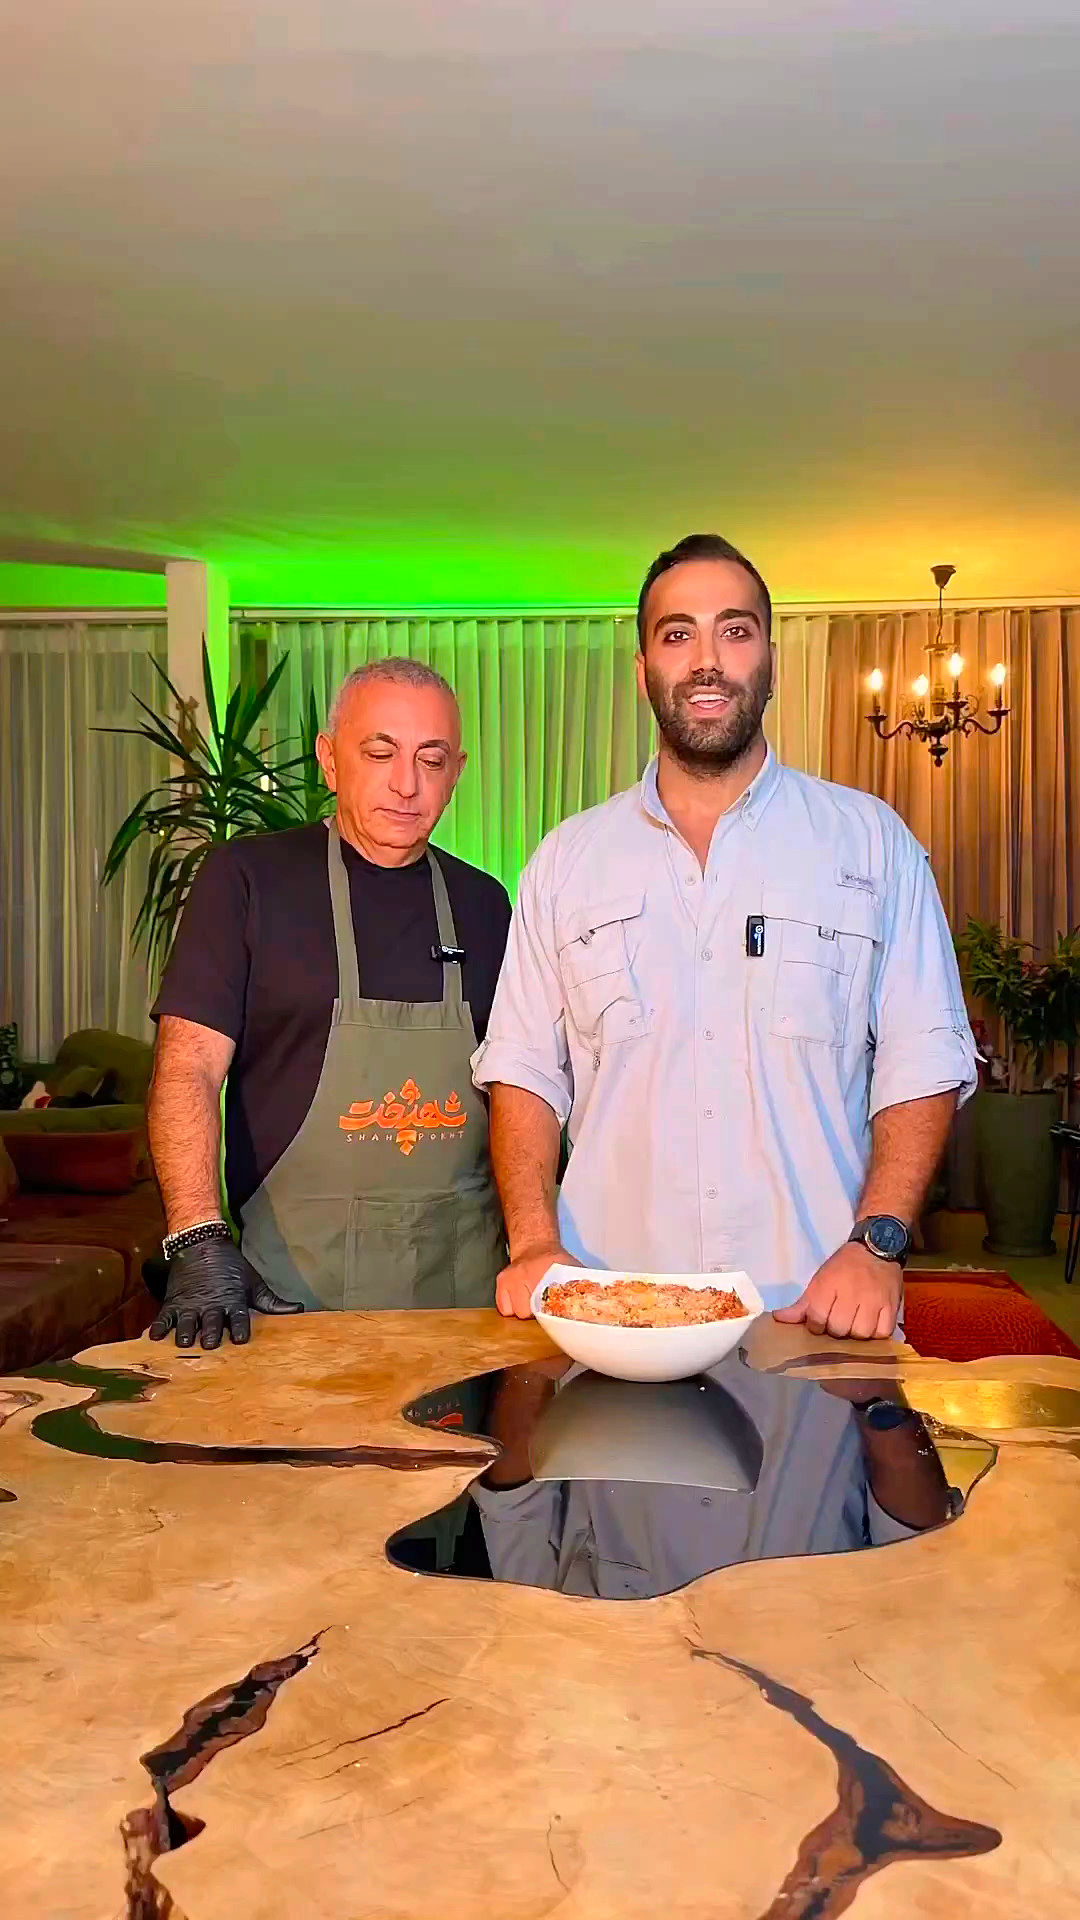 ببینید: دستور پخت سیرابی به سبک ایتالیایی!